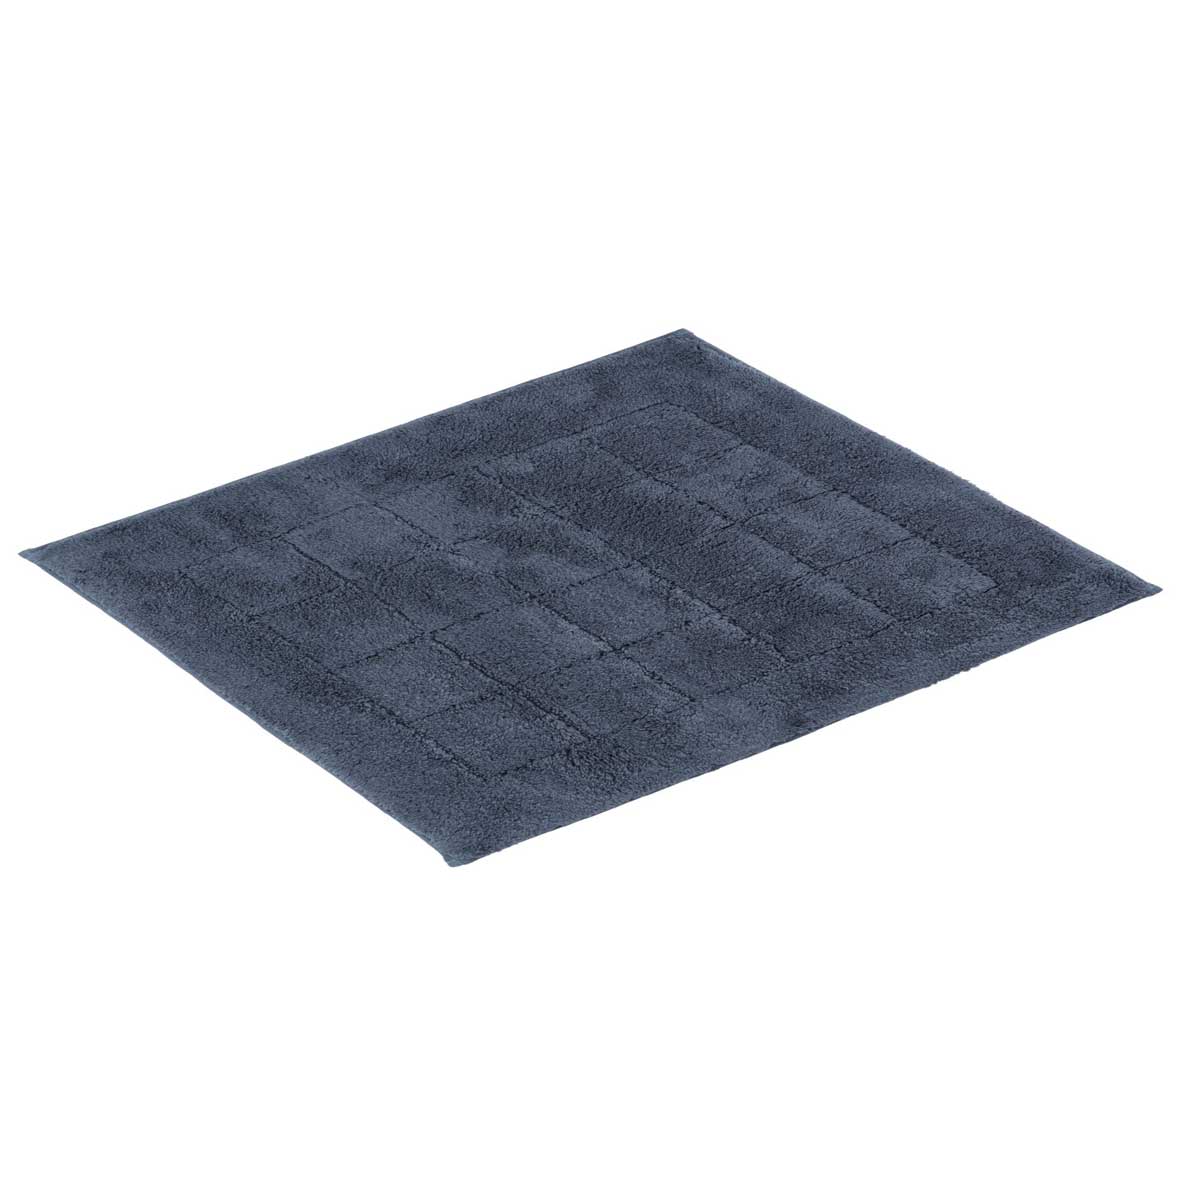 Коврик для ванной комнаты Vossen Exclusive 55x65см, серо-синий коврик для ванной комнаты carl серый 60 90 ridder